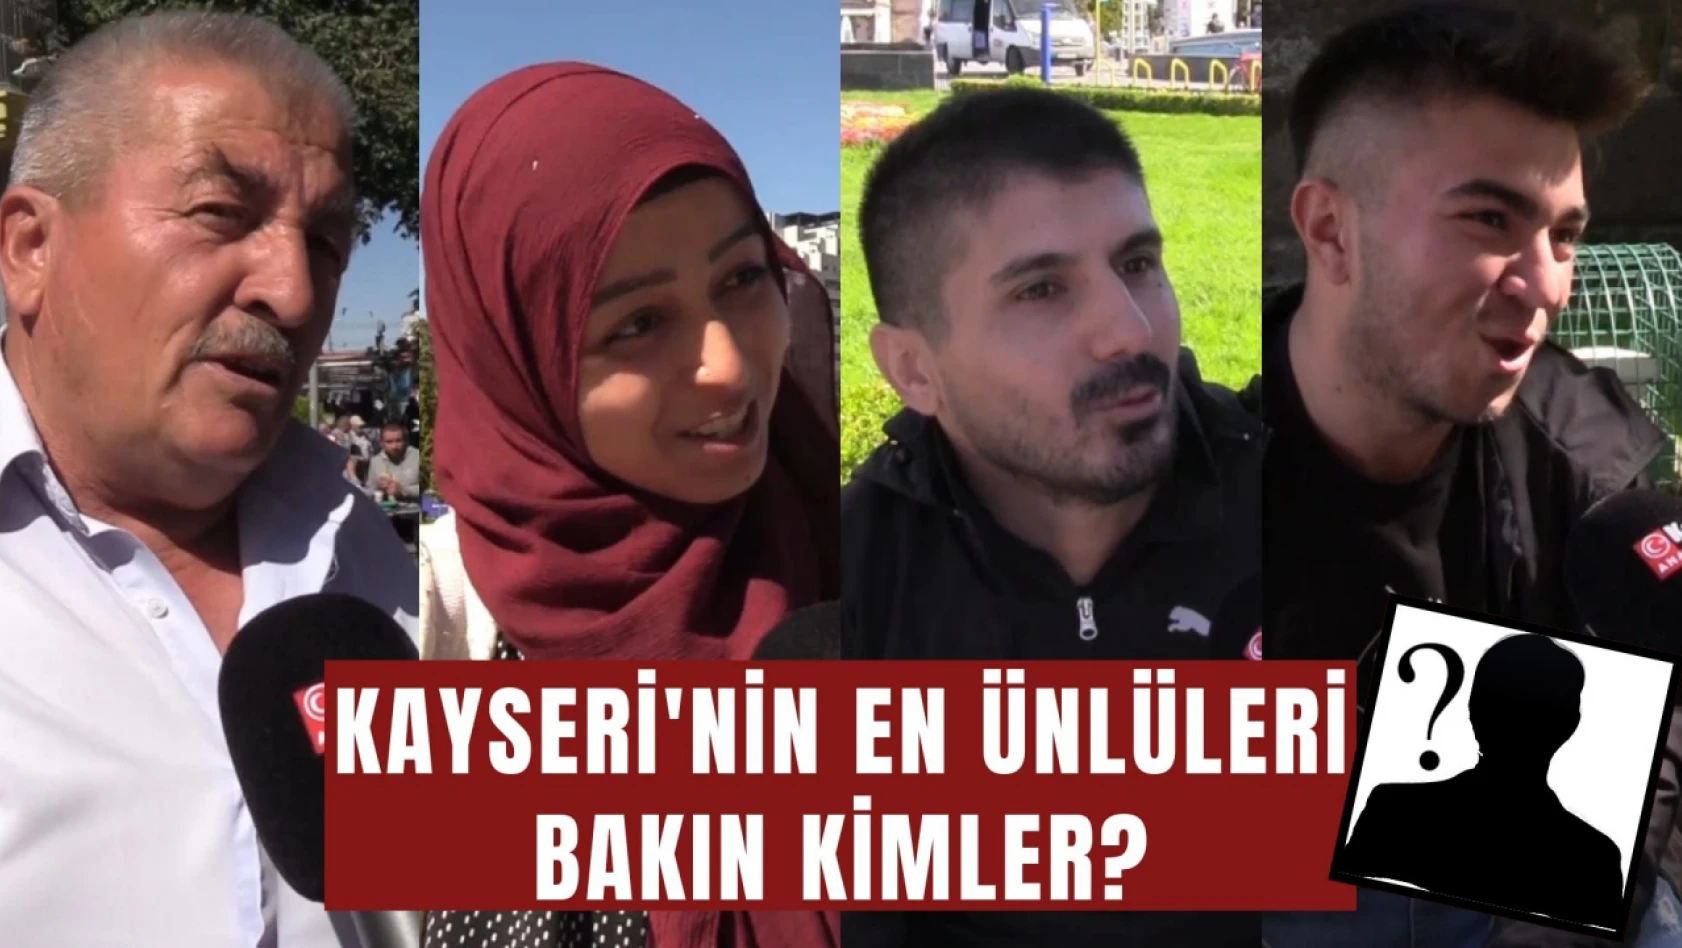 Kayseri'nin en ünlüleri bakın kimler? Anadolu'da Z Raporu